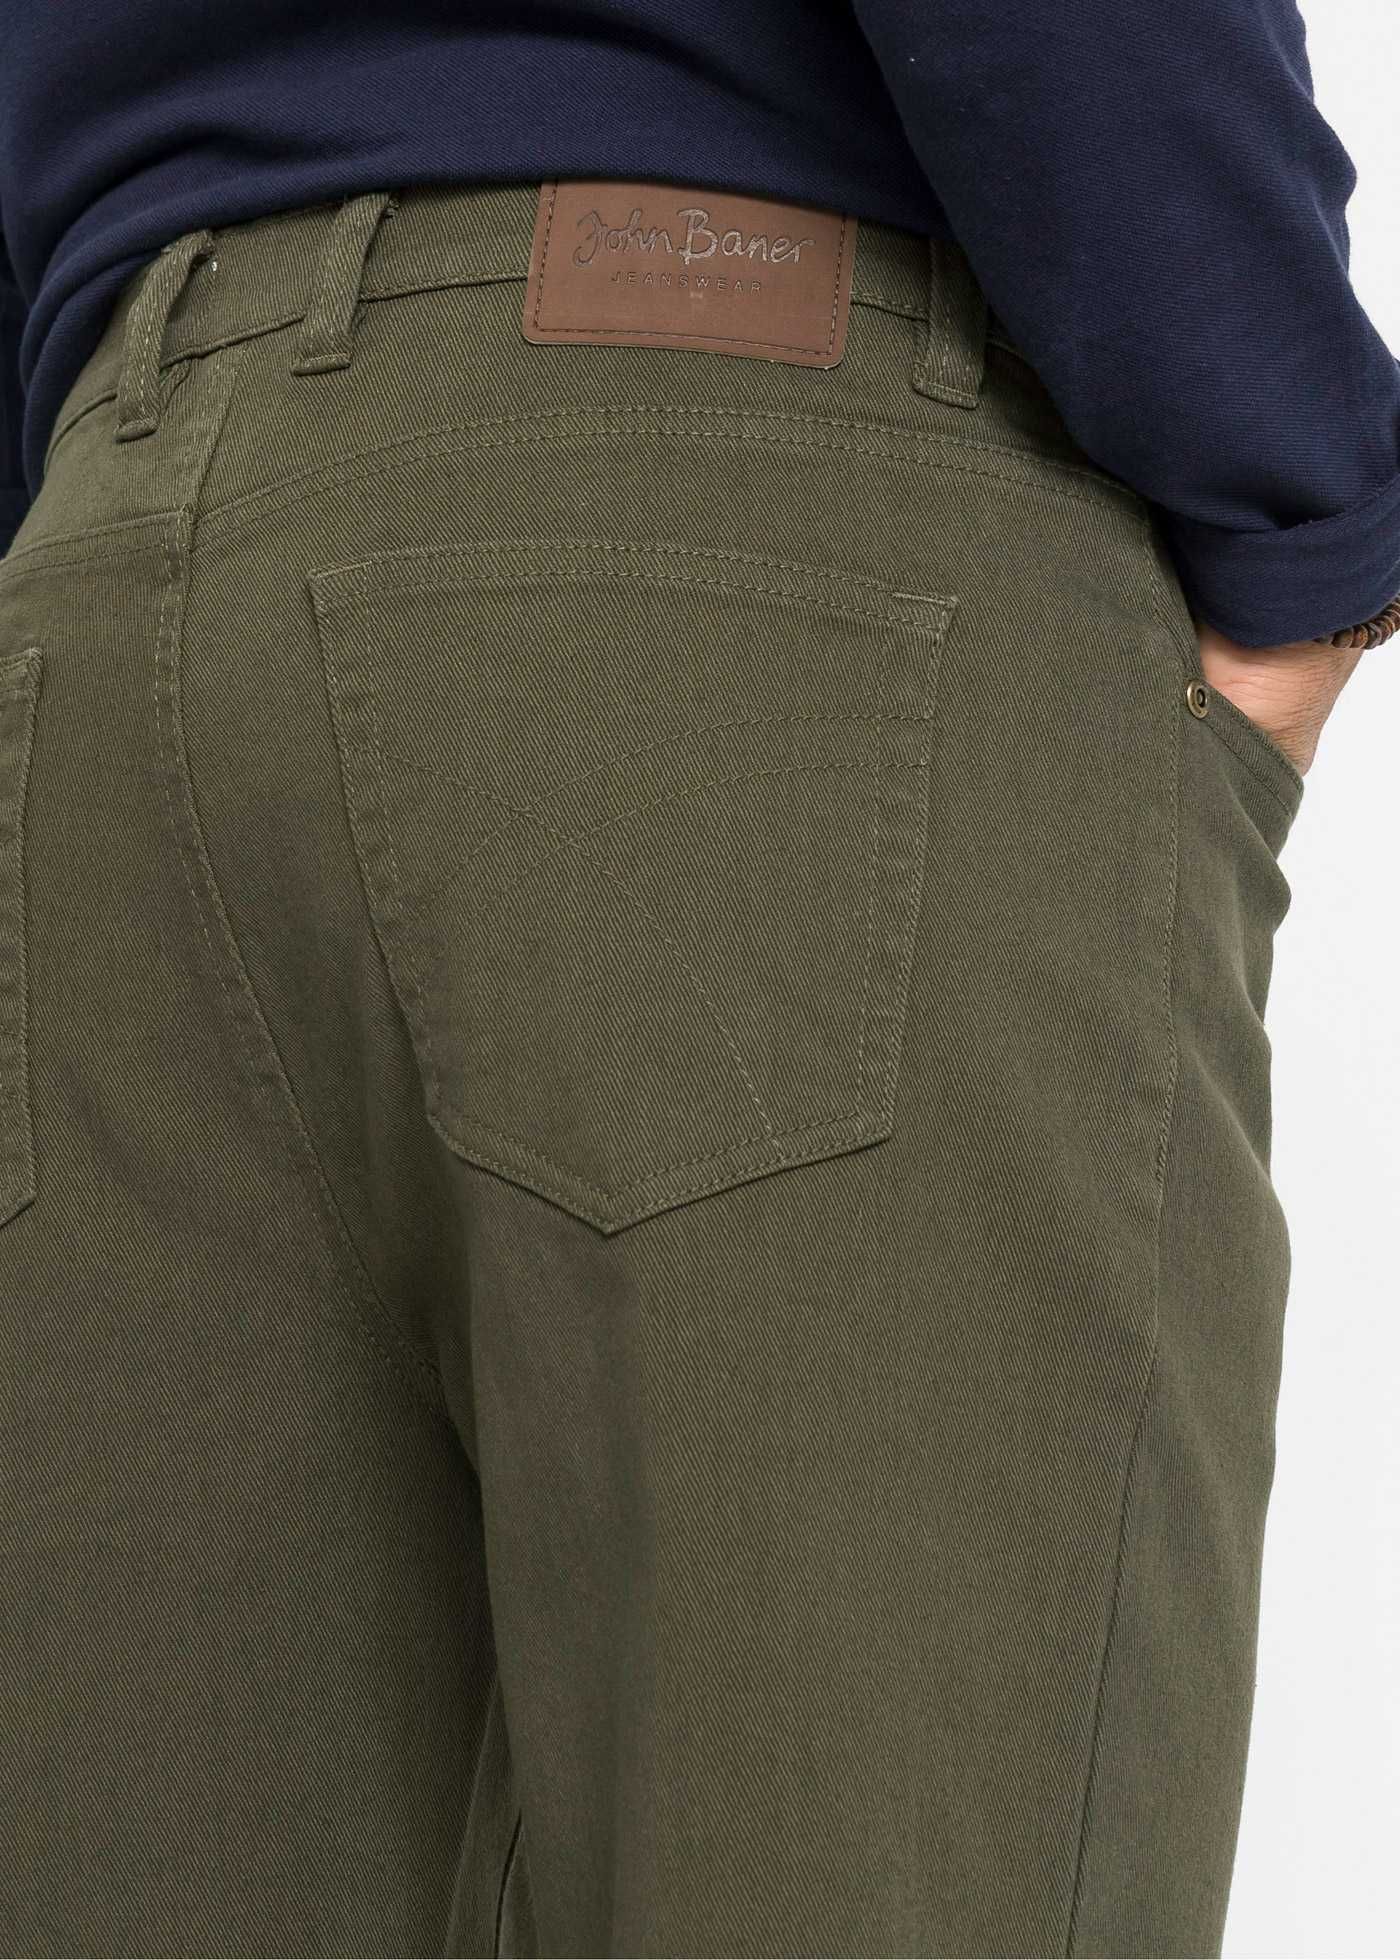 Spodnie męskie zielone stretch Bawełna Rozmiar 48/24 na niskie osoby